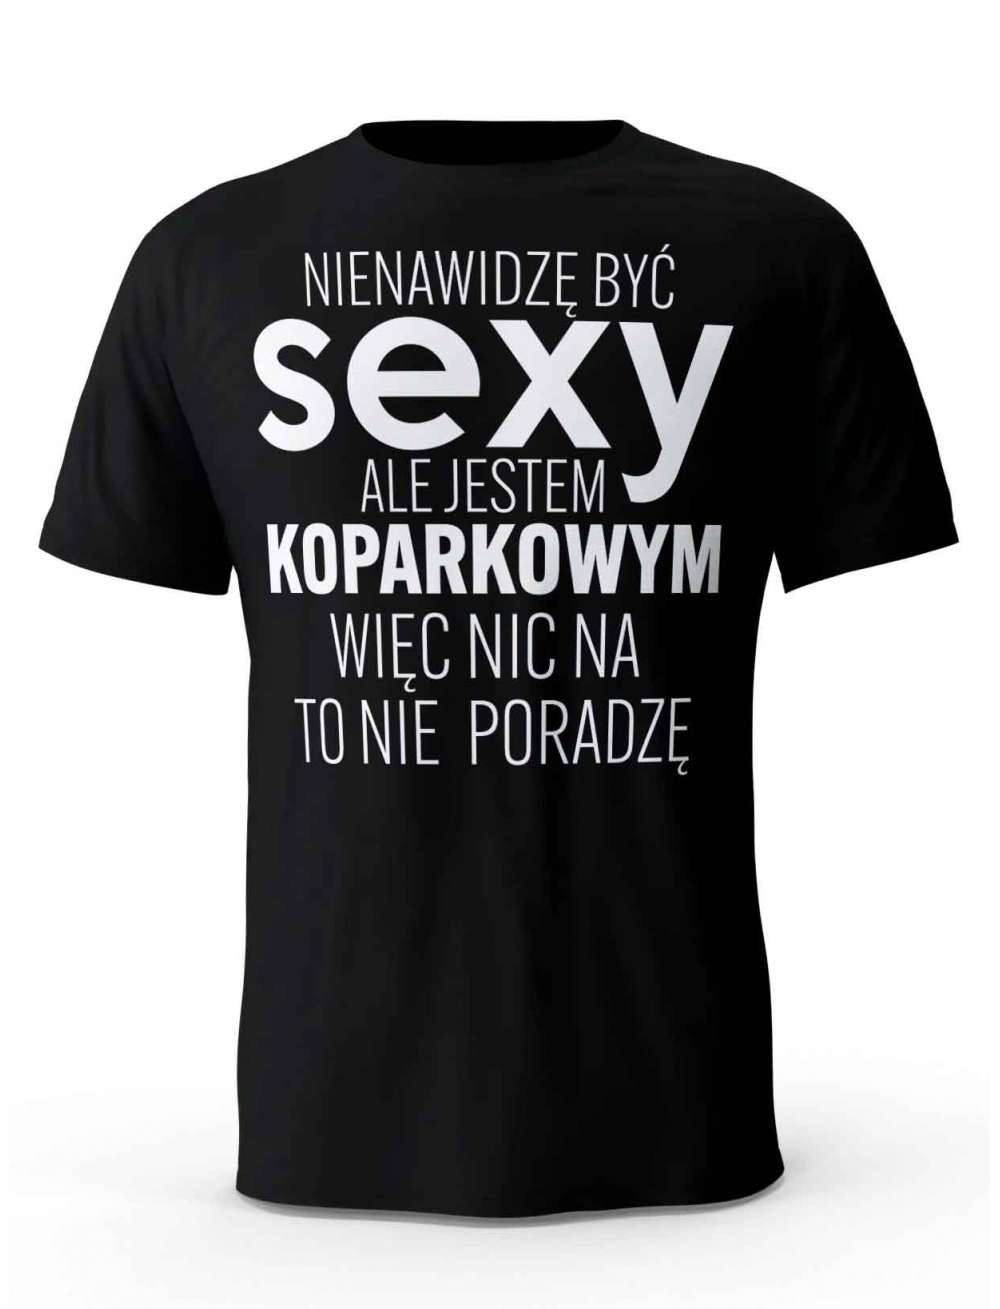 Koszulka Męska, Sexy Koparkowy, Prezent Dla Mężczyzny